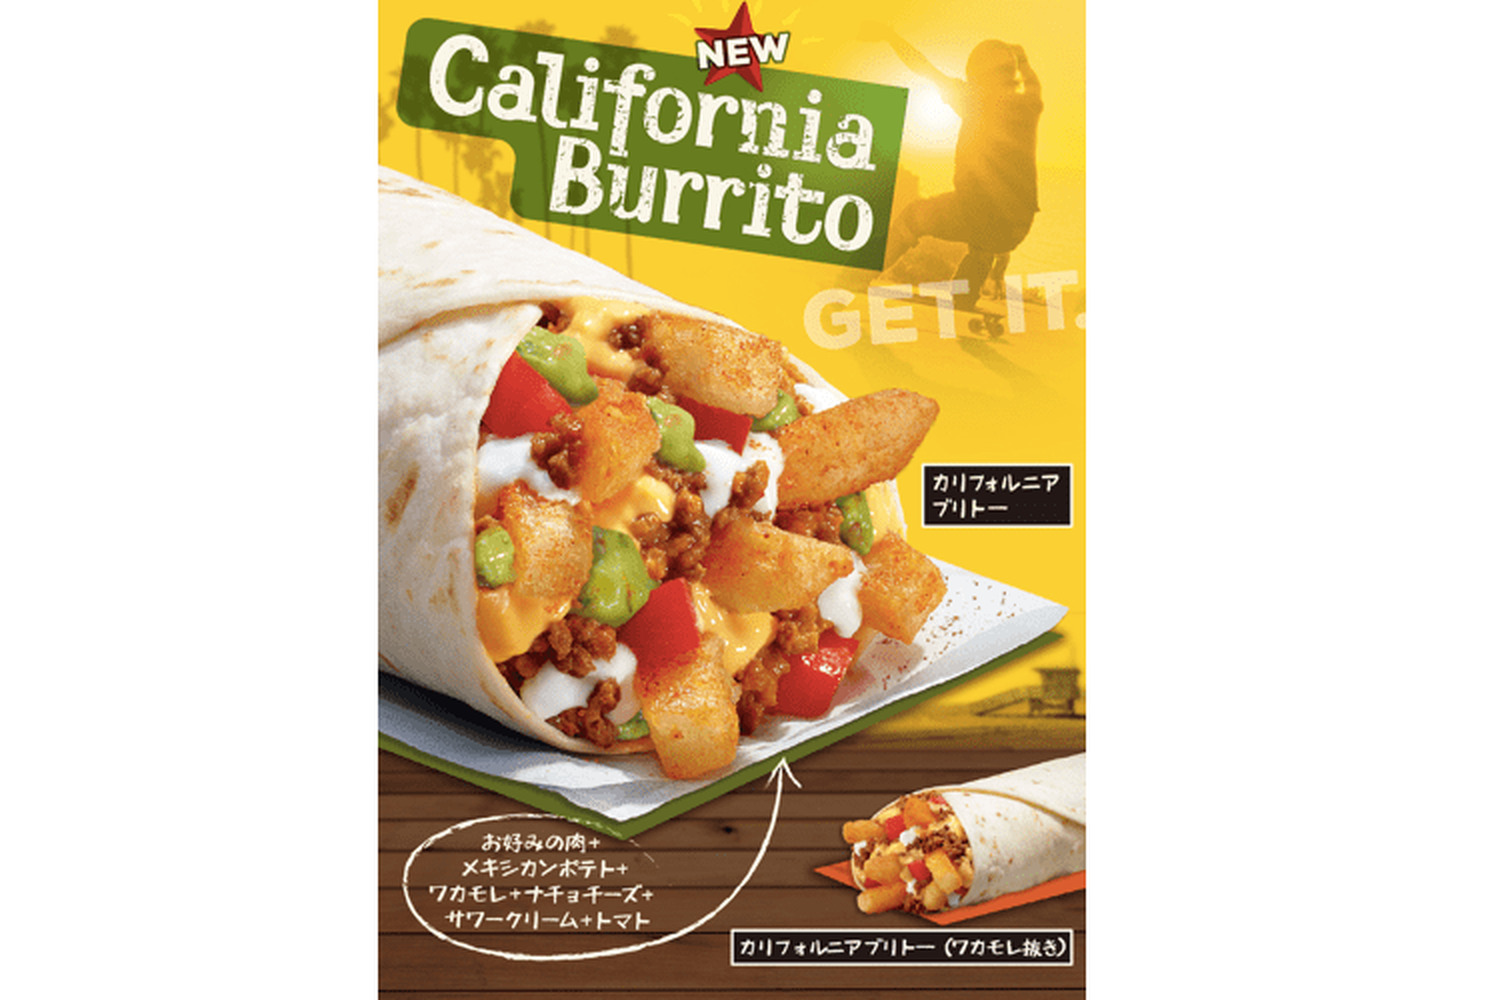 TACO BELL California Burrito